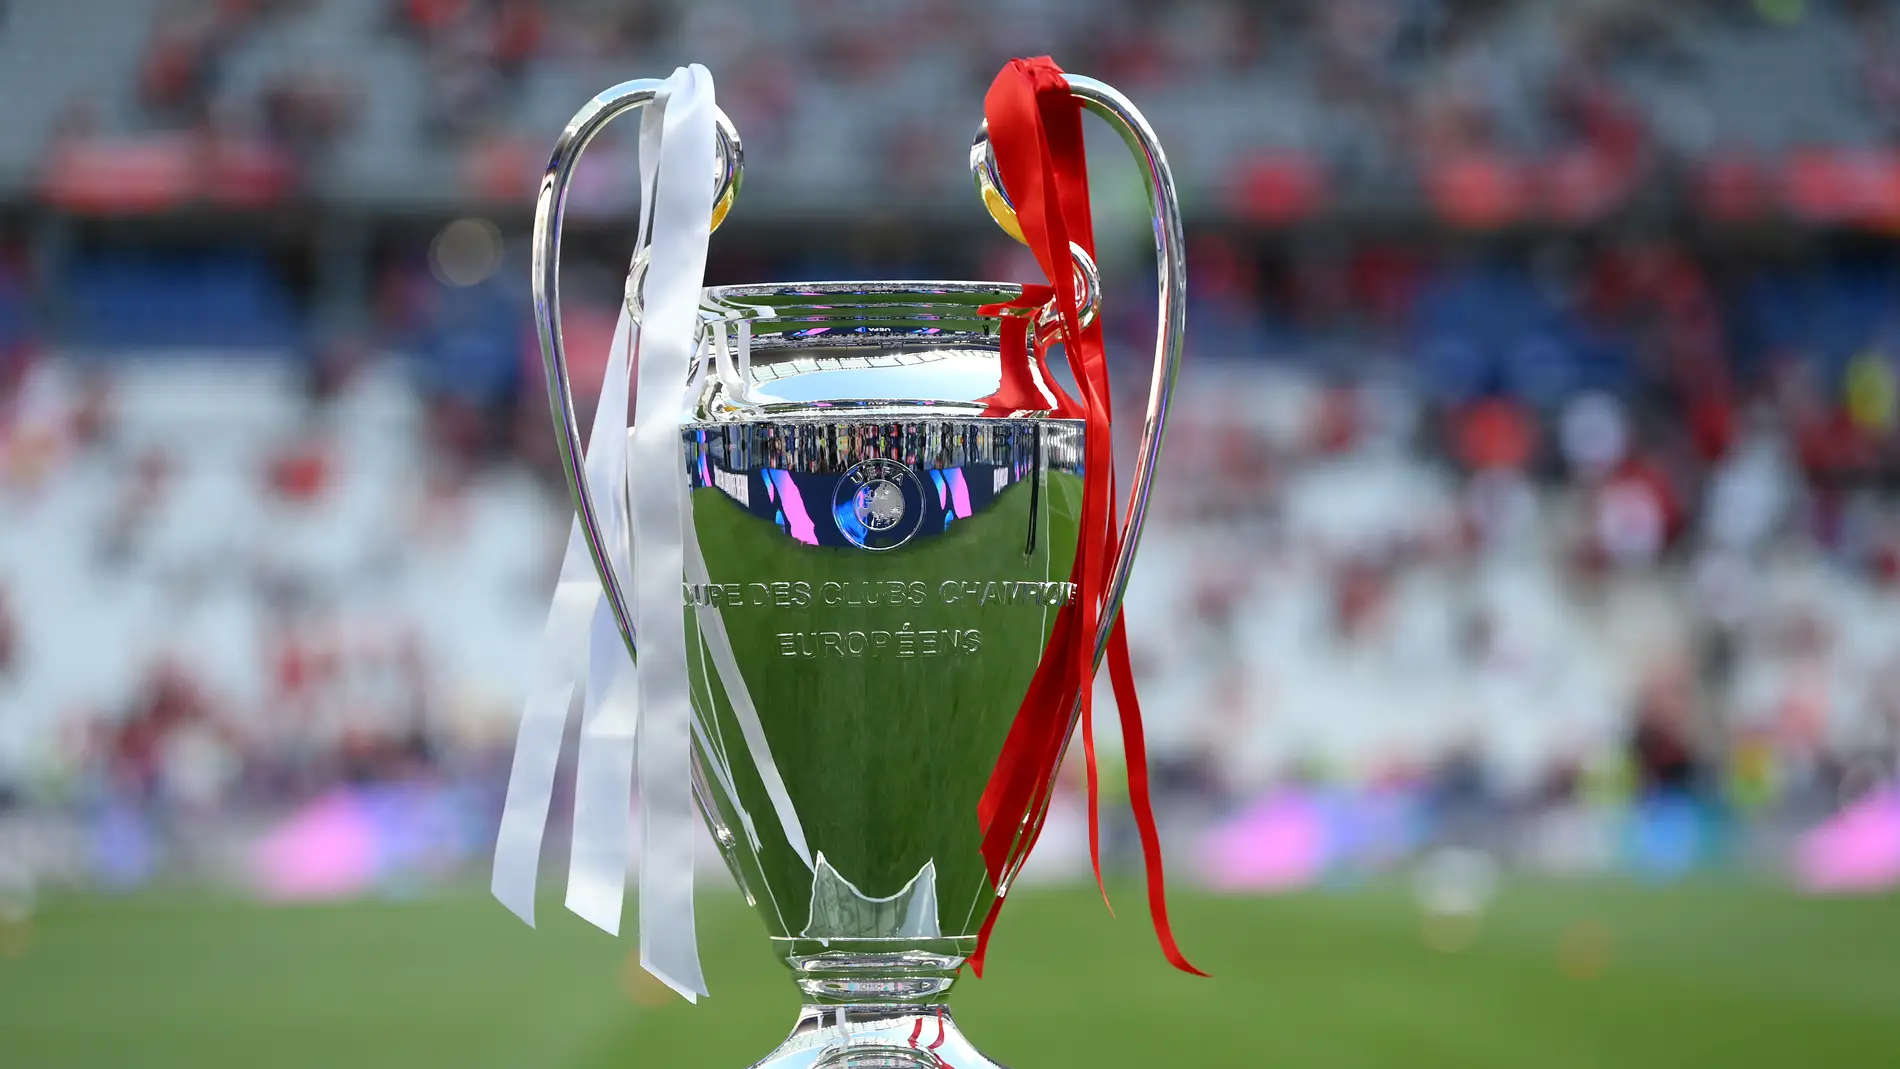 Confirmadas las fechas de la Champions League 2022/2023: son los días que se jugarán los partidos | Onda Cero